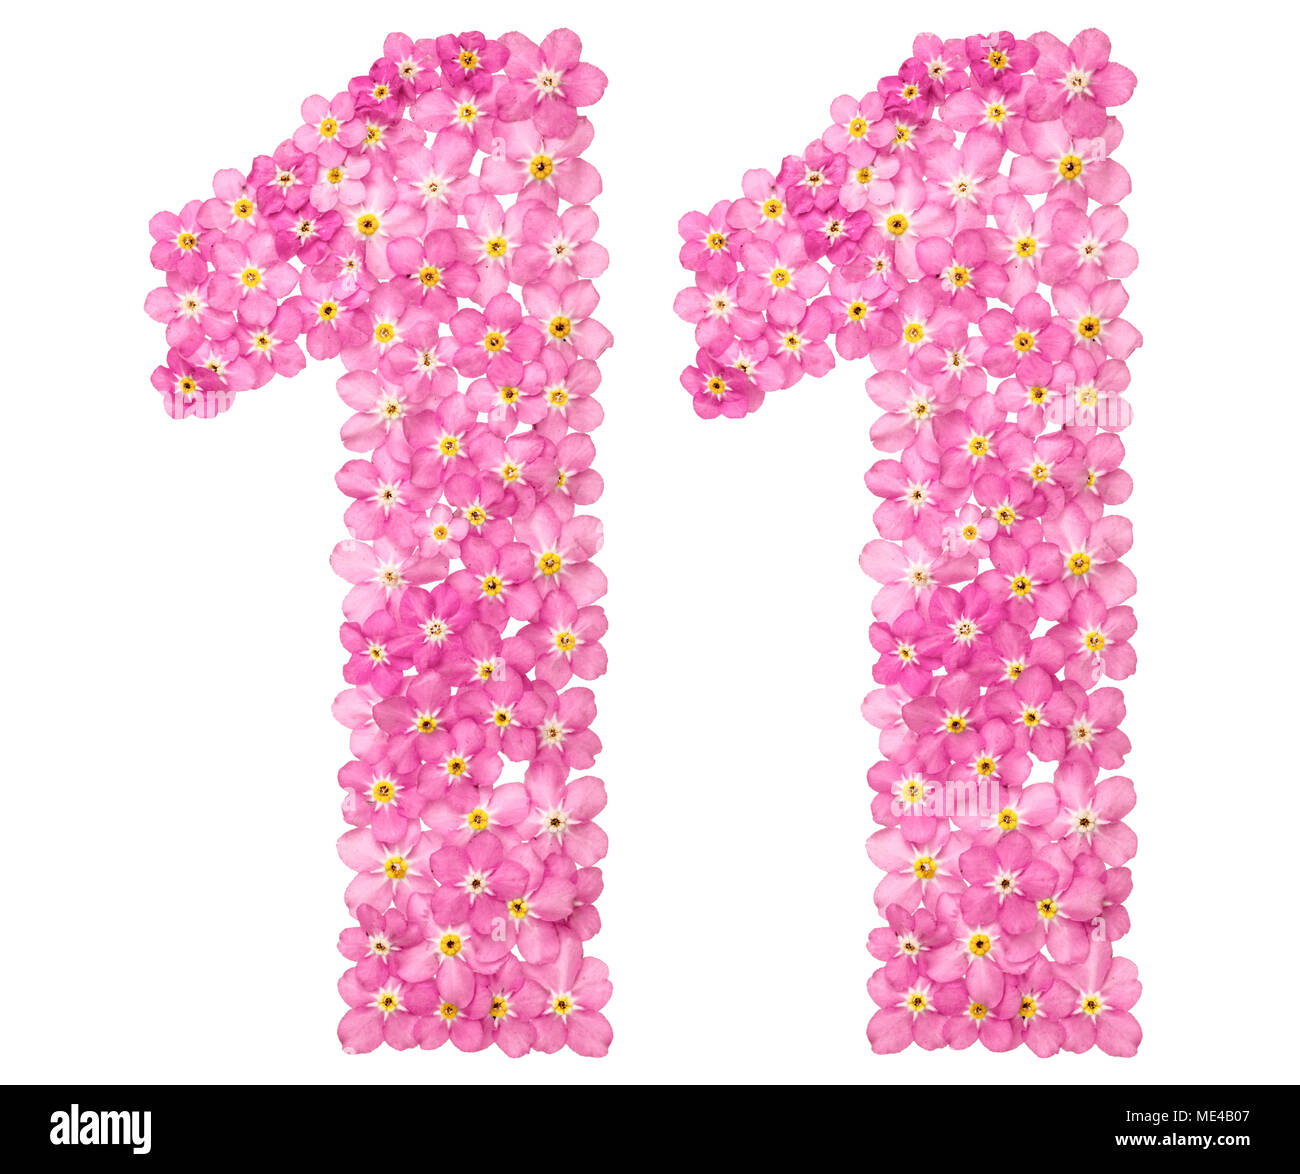 Numero arabo 11, undici, dal rosa dimenticare-me-non fiori, isolati su sfondo bianco Foto Stock